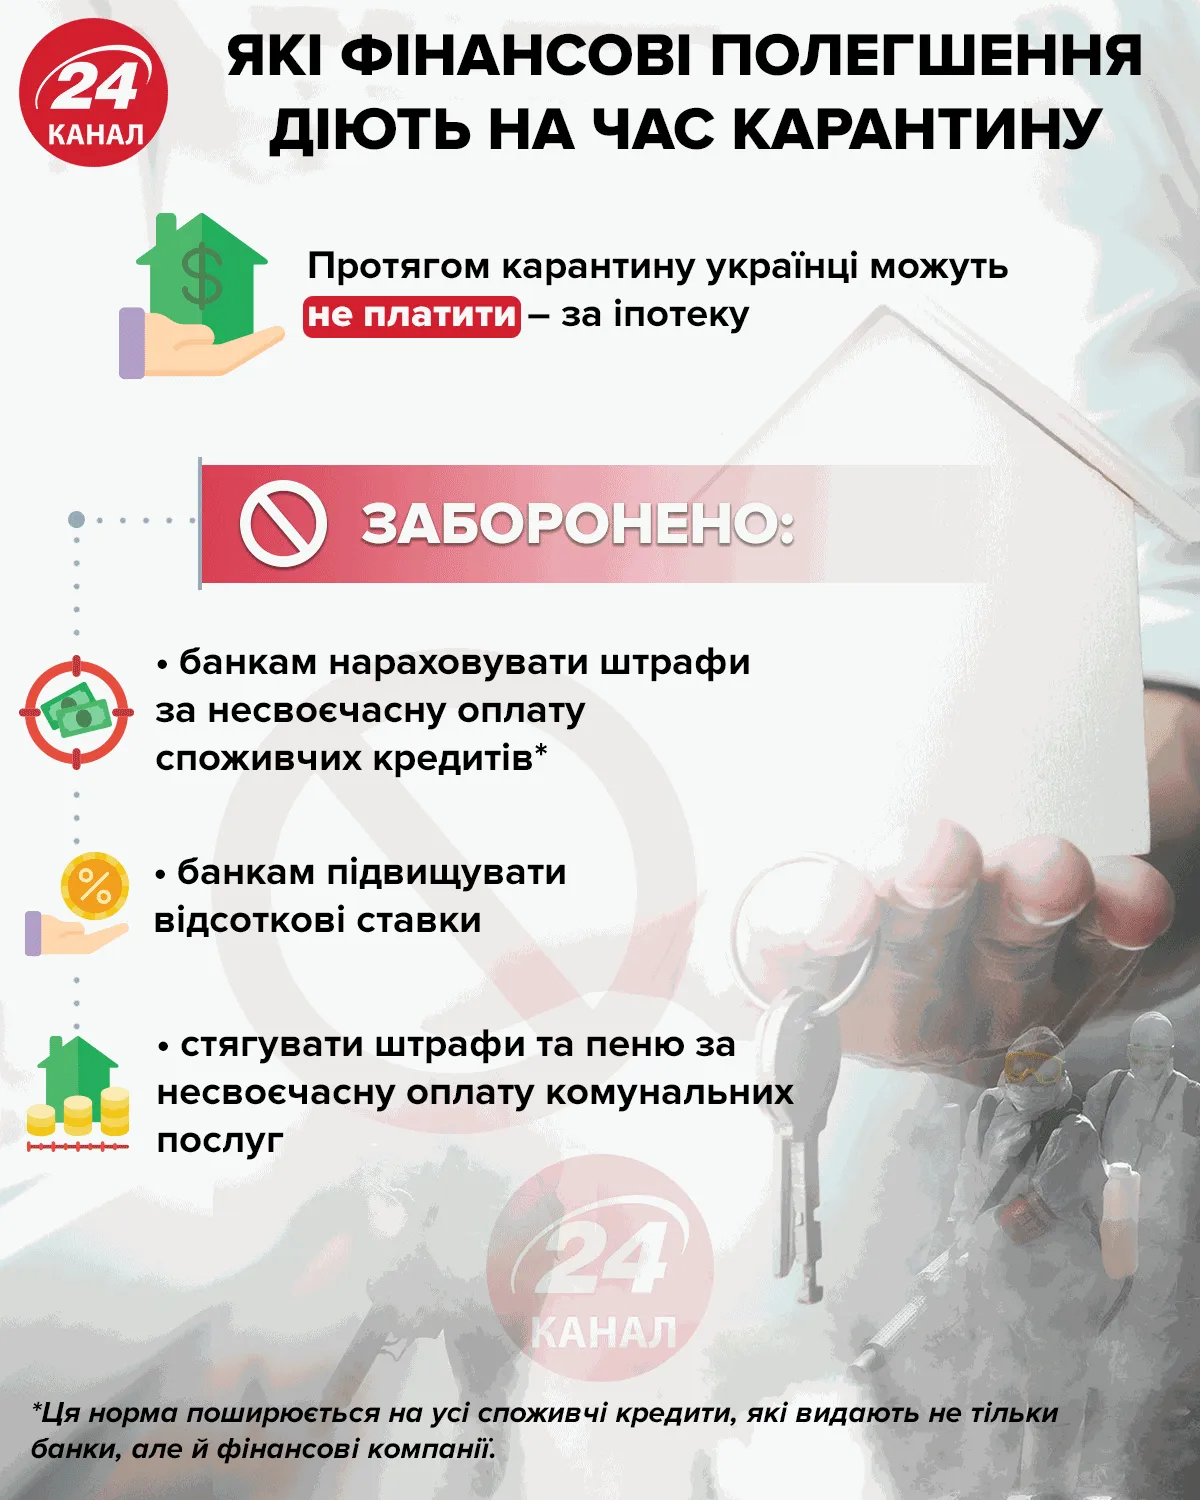 фінанові полегшеня під час карантину в Україні 2020